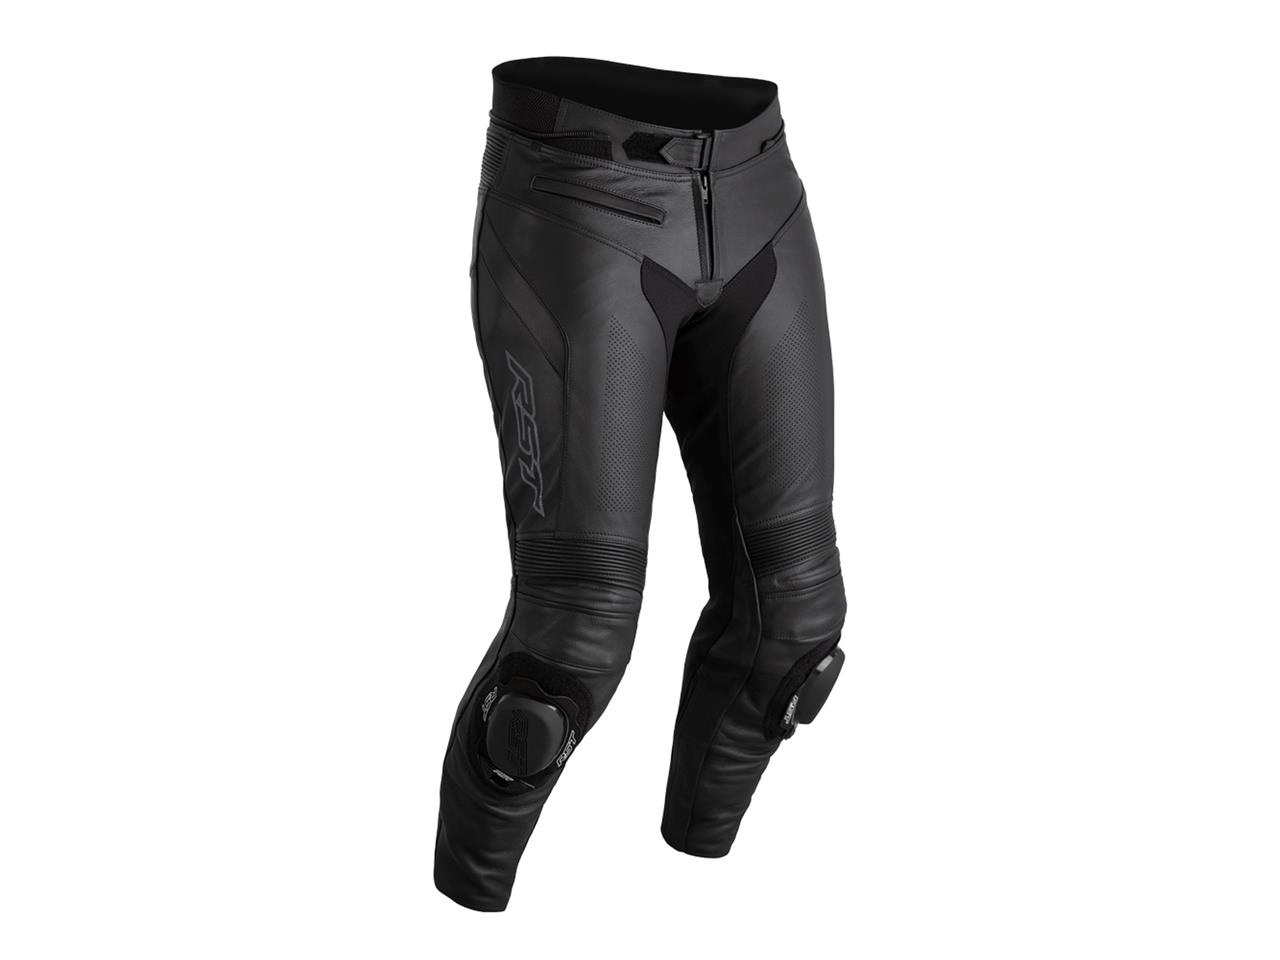 Pantalon moto homme marque RST Sabre cuir noir